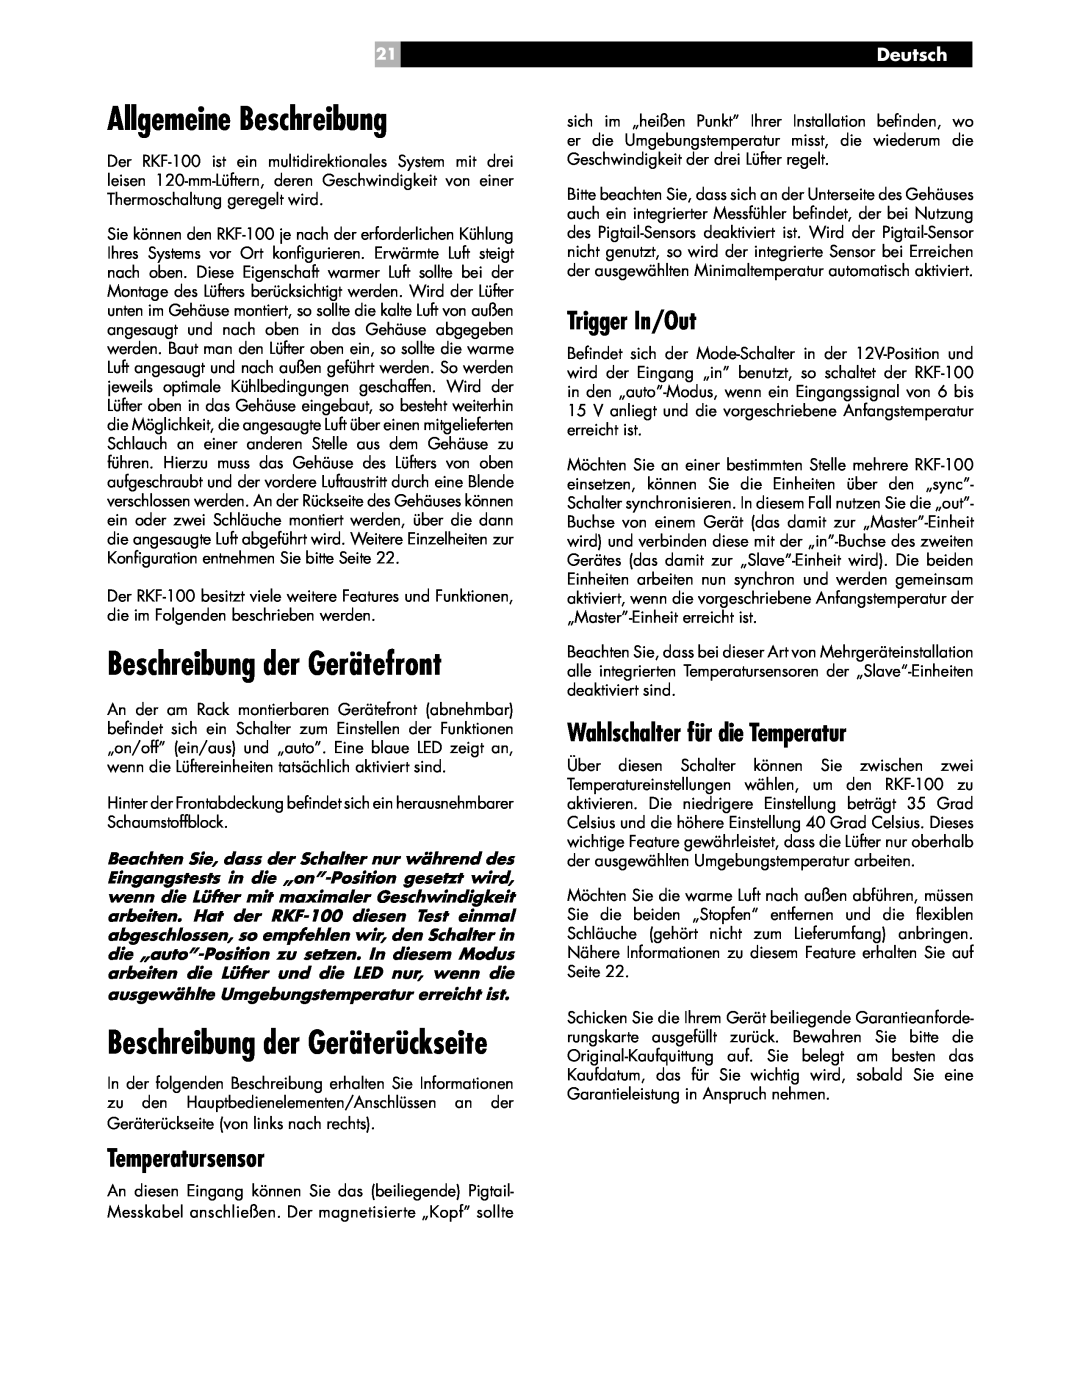 Rotel RKF-100 Allgemeine Beschreibung, Beschreibung der Gerätefront, Beschreibung der Geräterückseite, Trigger In/Out 